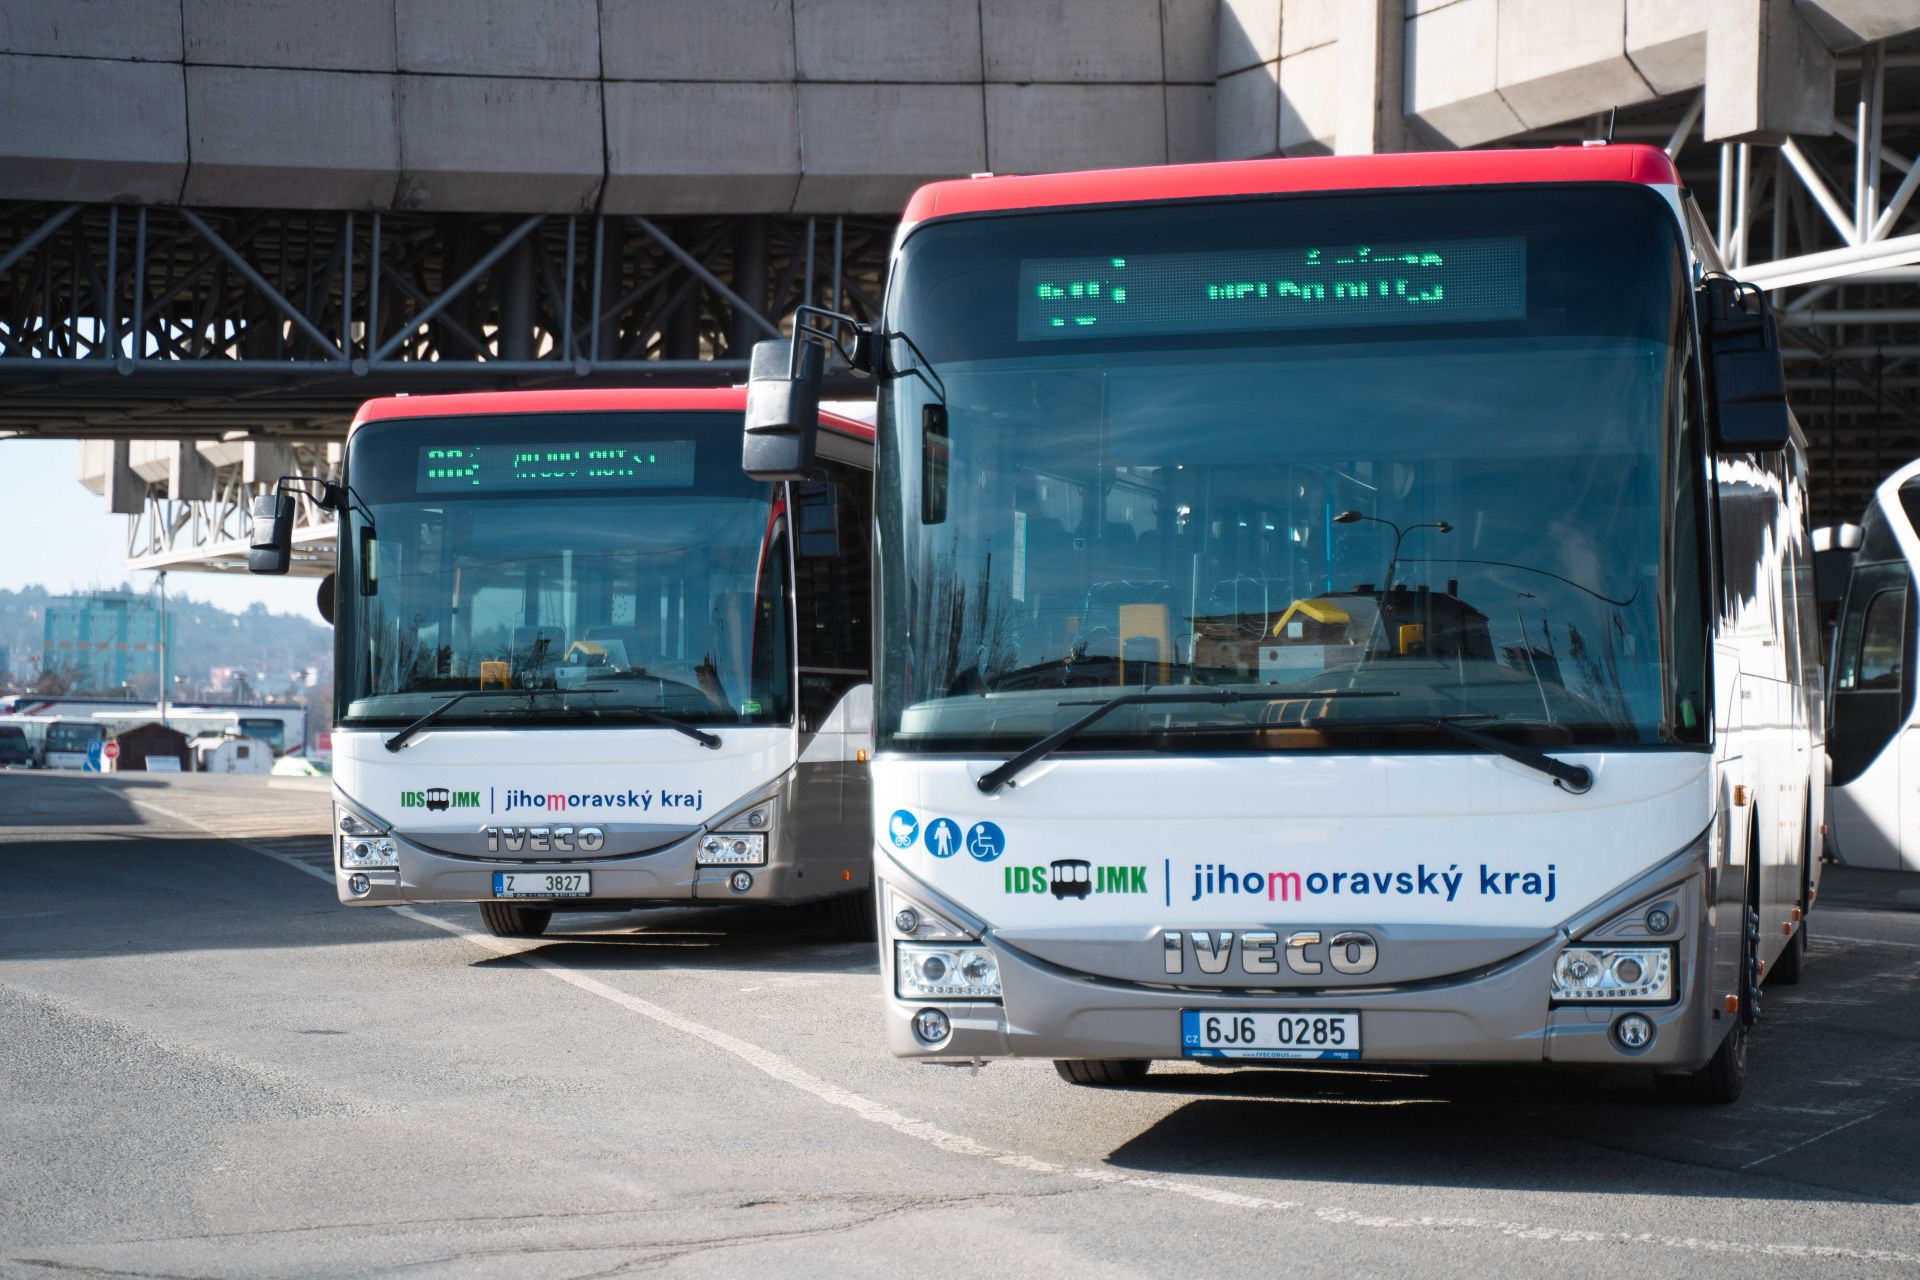 Jihomoravský kraj, autobusy v novém vizuálním stylu. Pramen: JMK